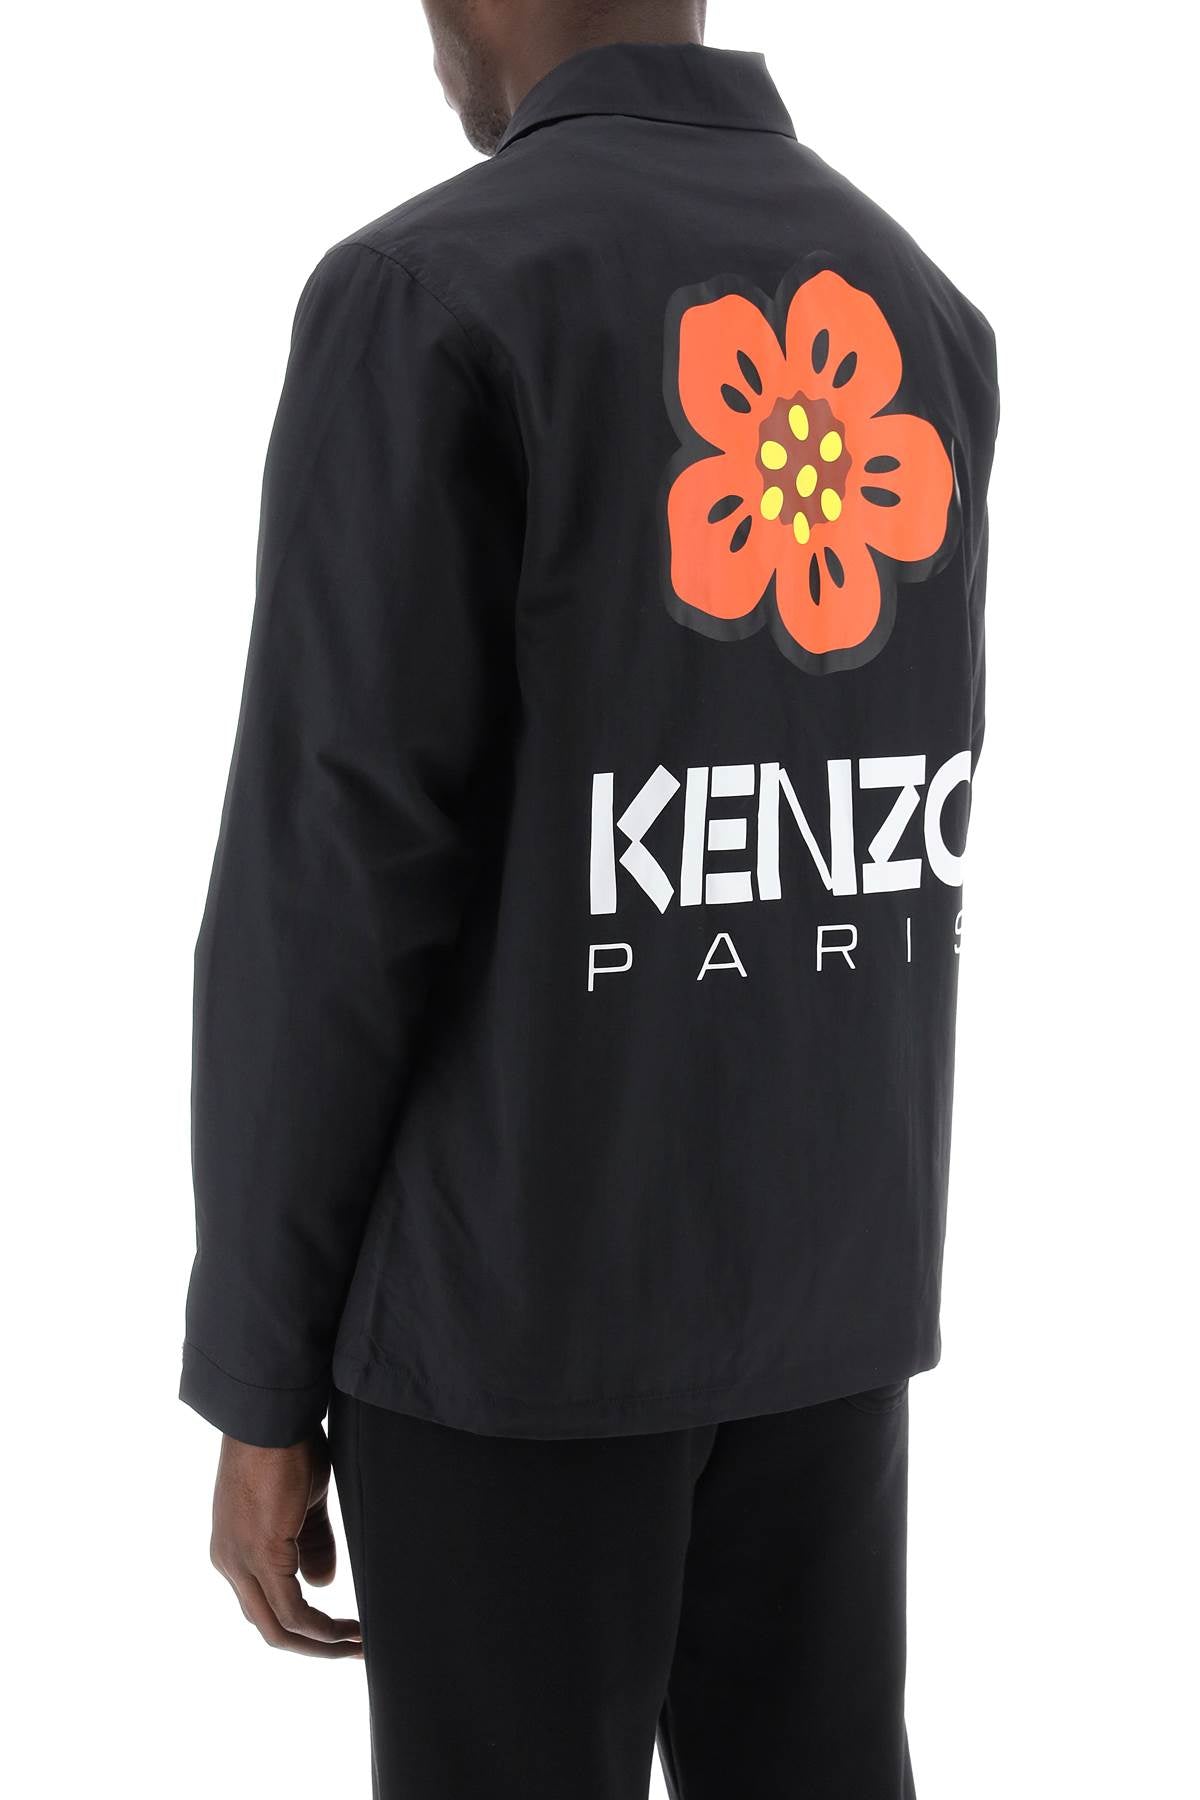 Kenzo-2